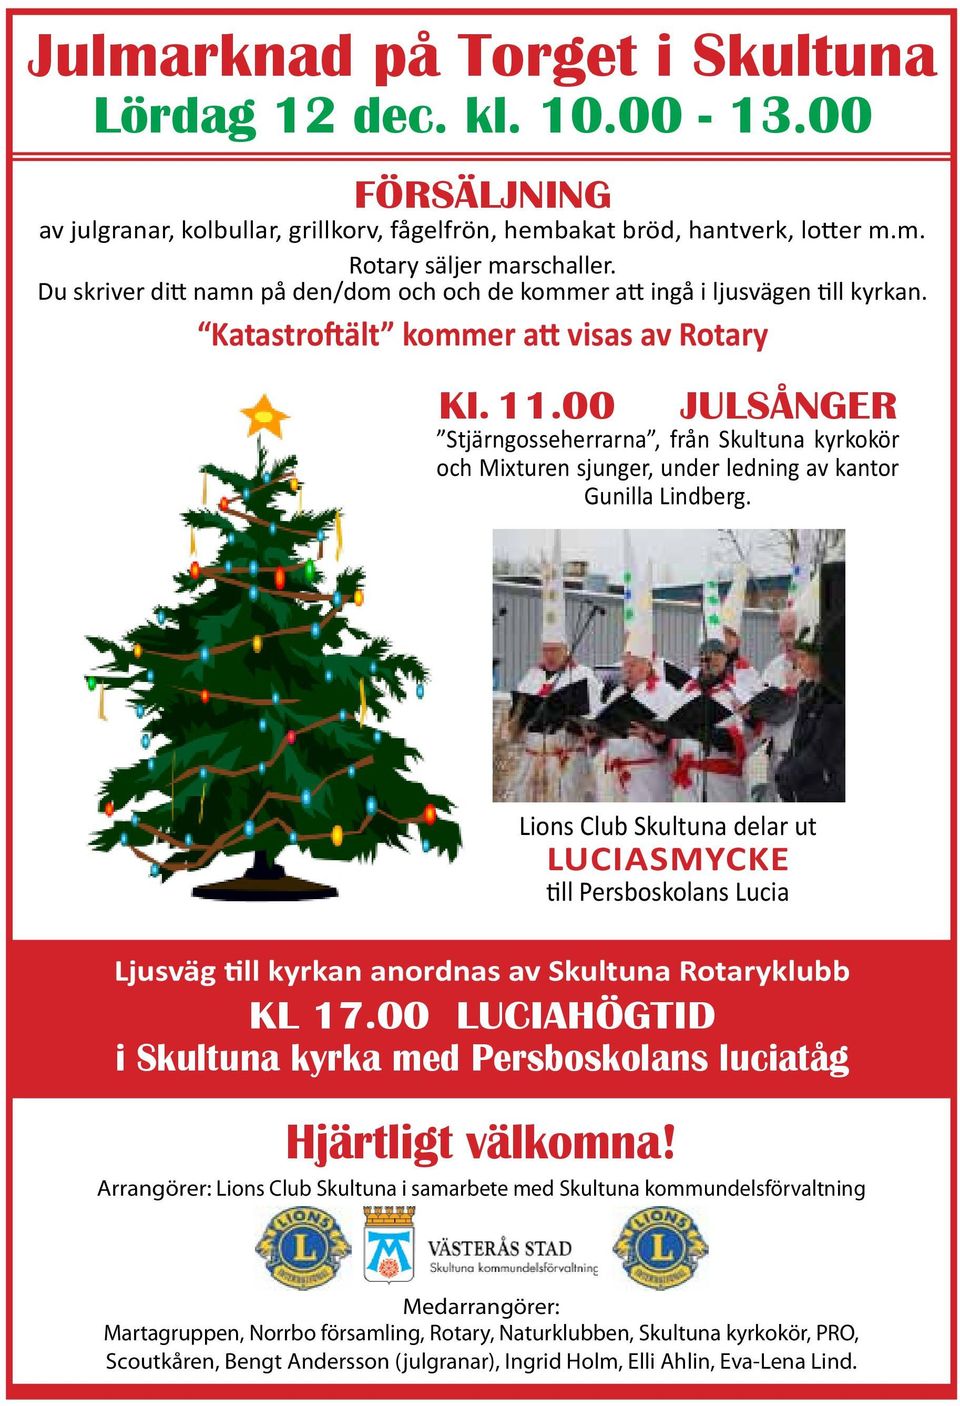 00 JULSÅNGER Stjärngosseherrarna, från Skultuna kyrkokör och Mixturen sjunger, under ledning av kantor Gunilla Lindberg.